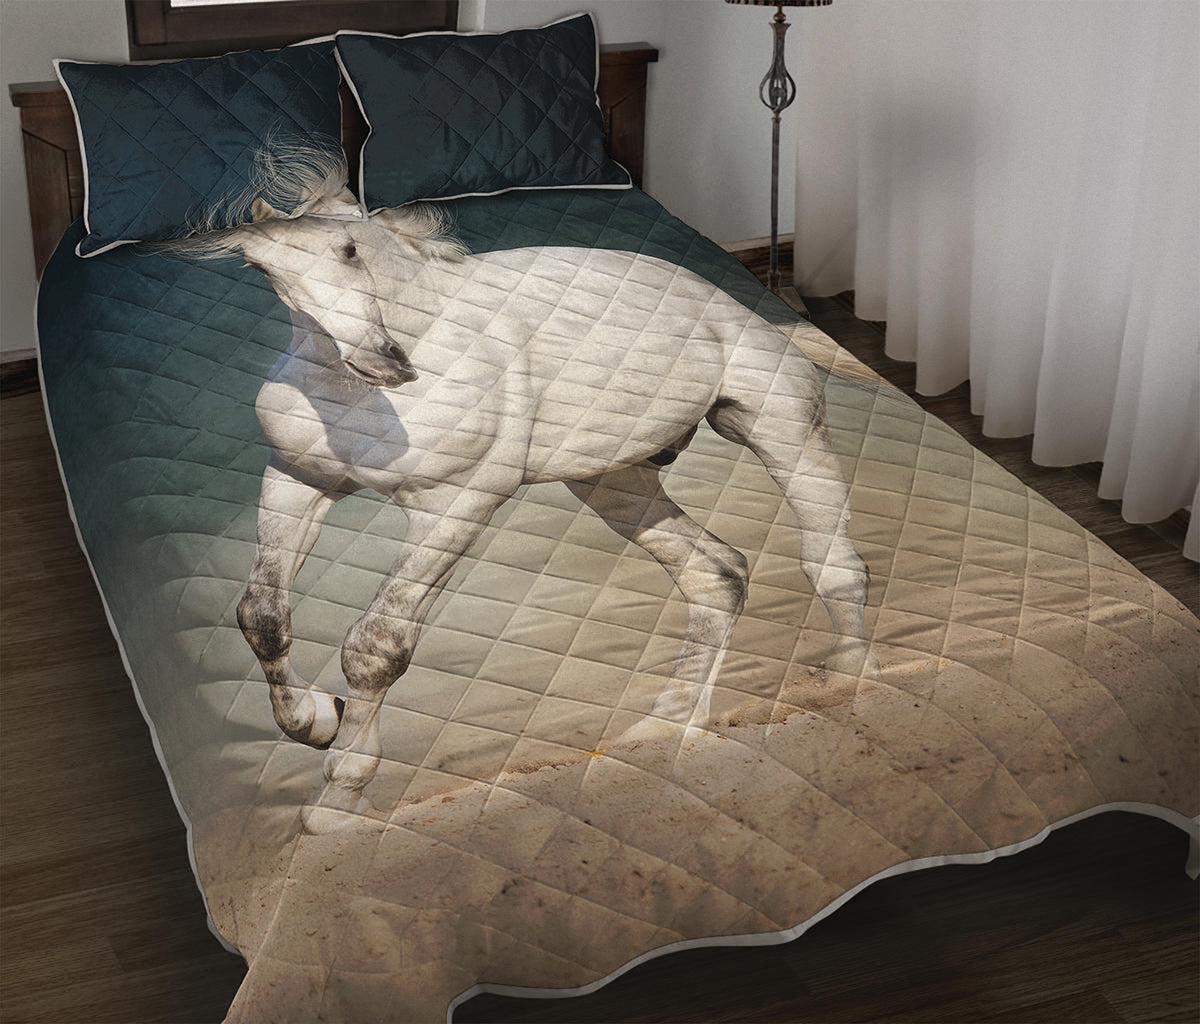 White Stallion Horse Print Quilt Bed Set